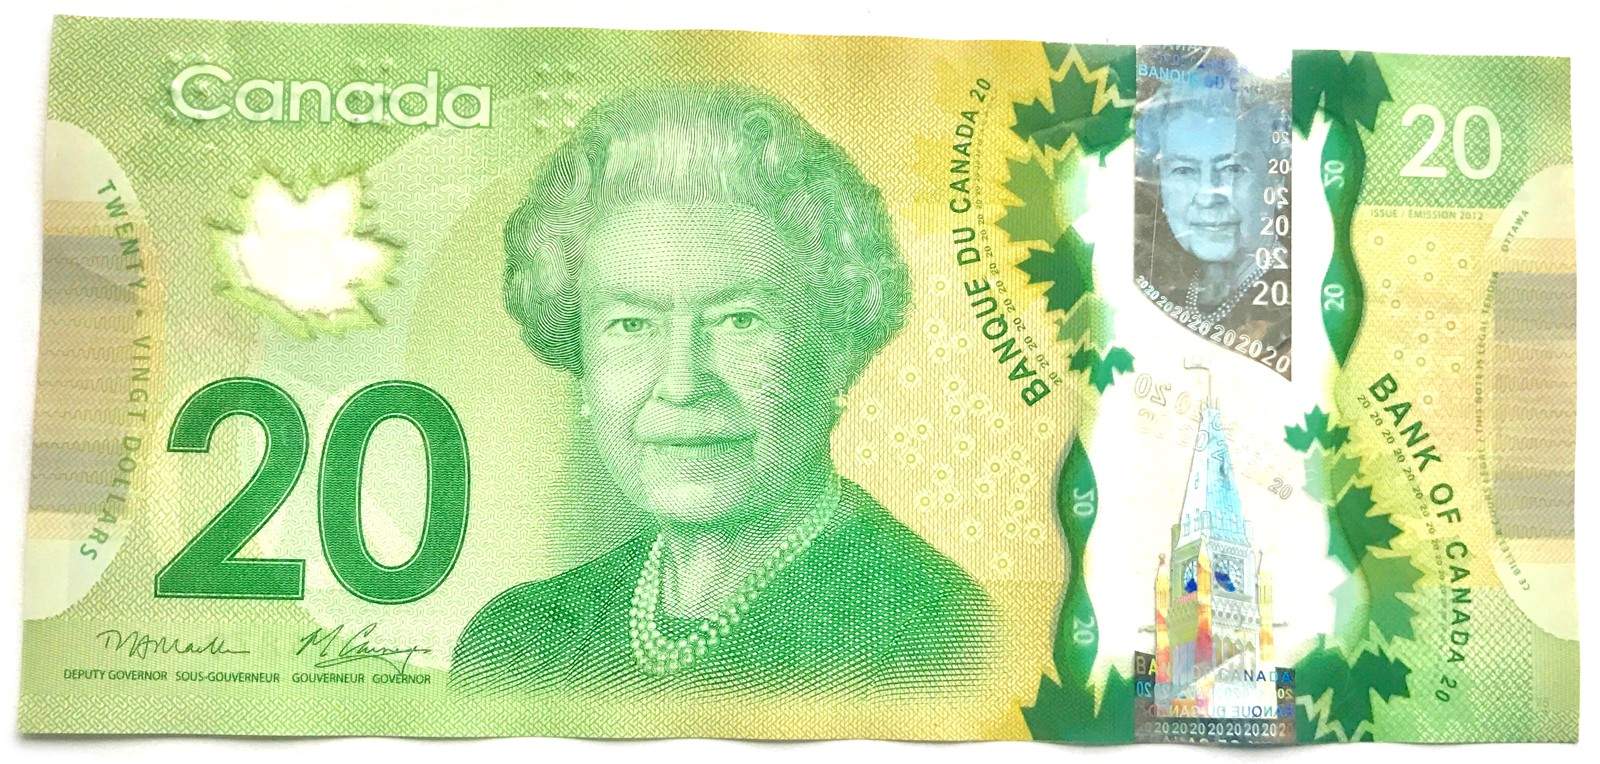 加拿大元-加拿大元符号